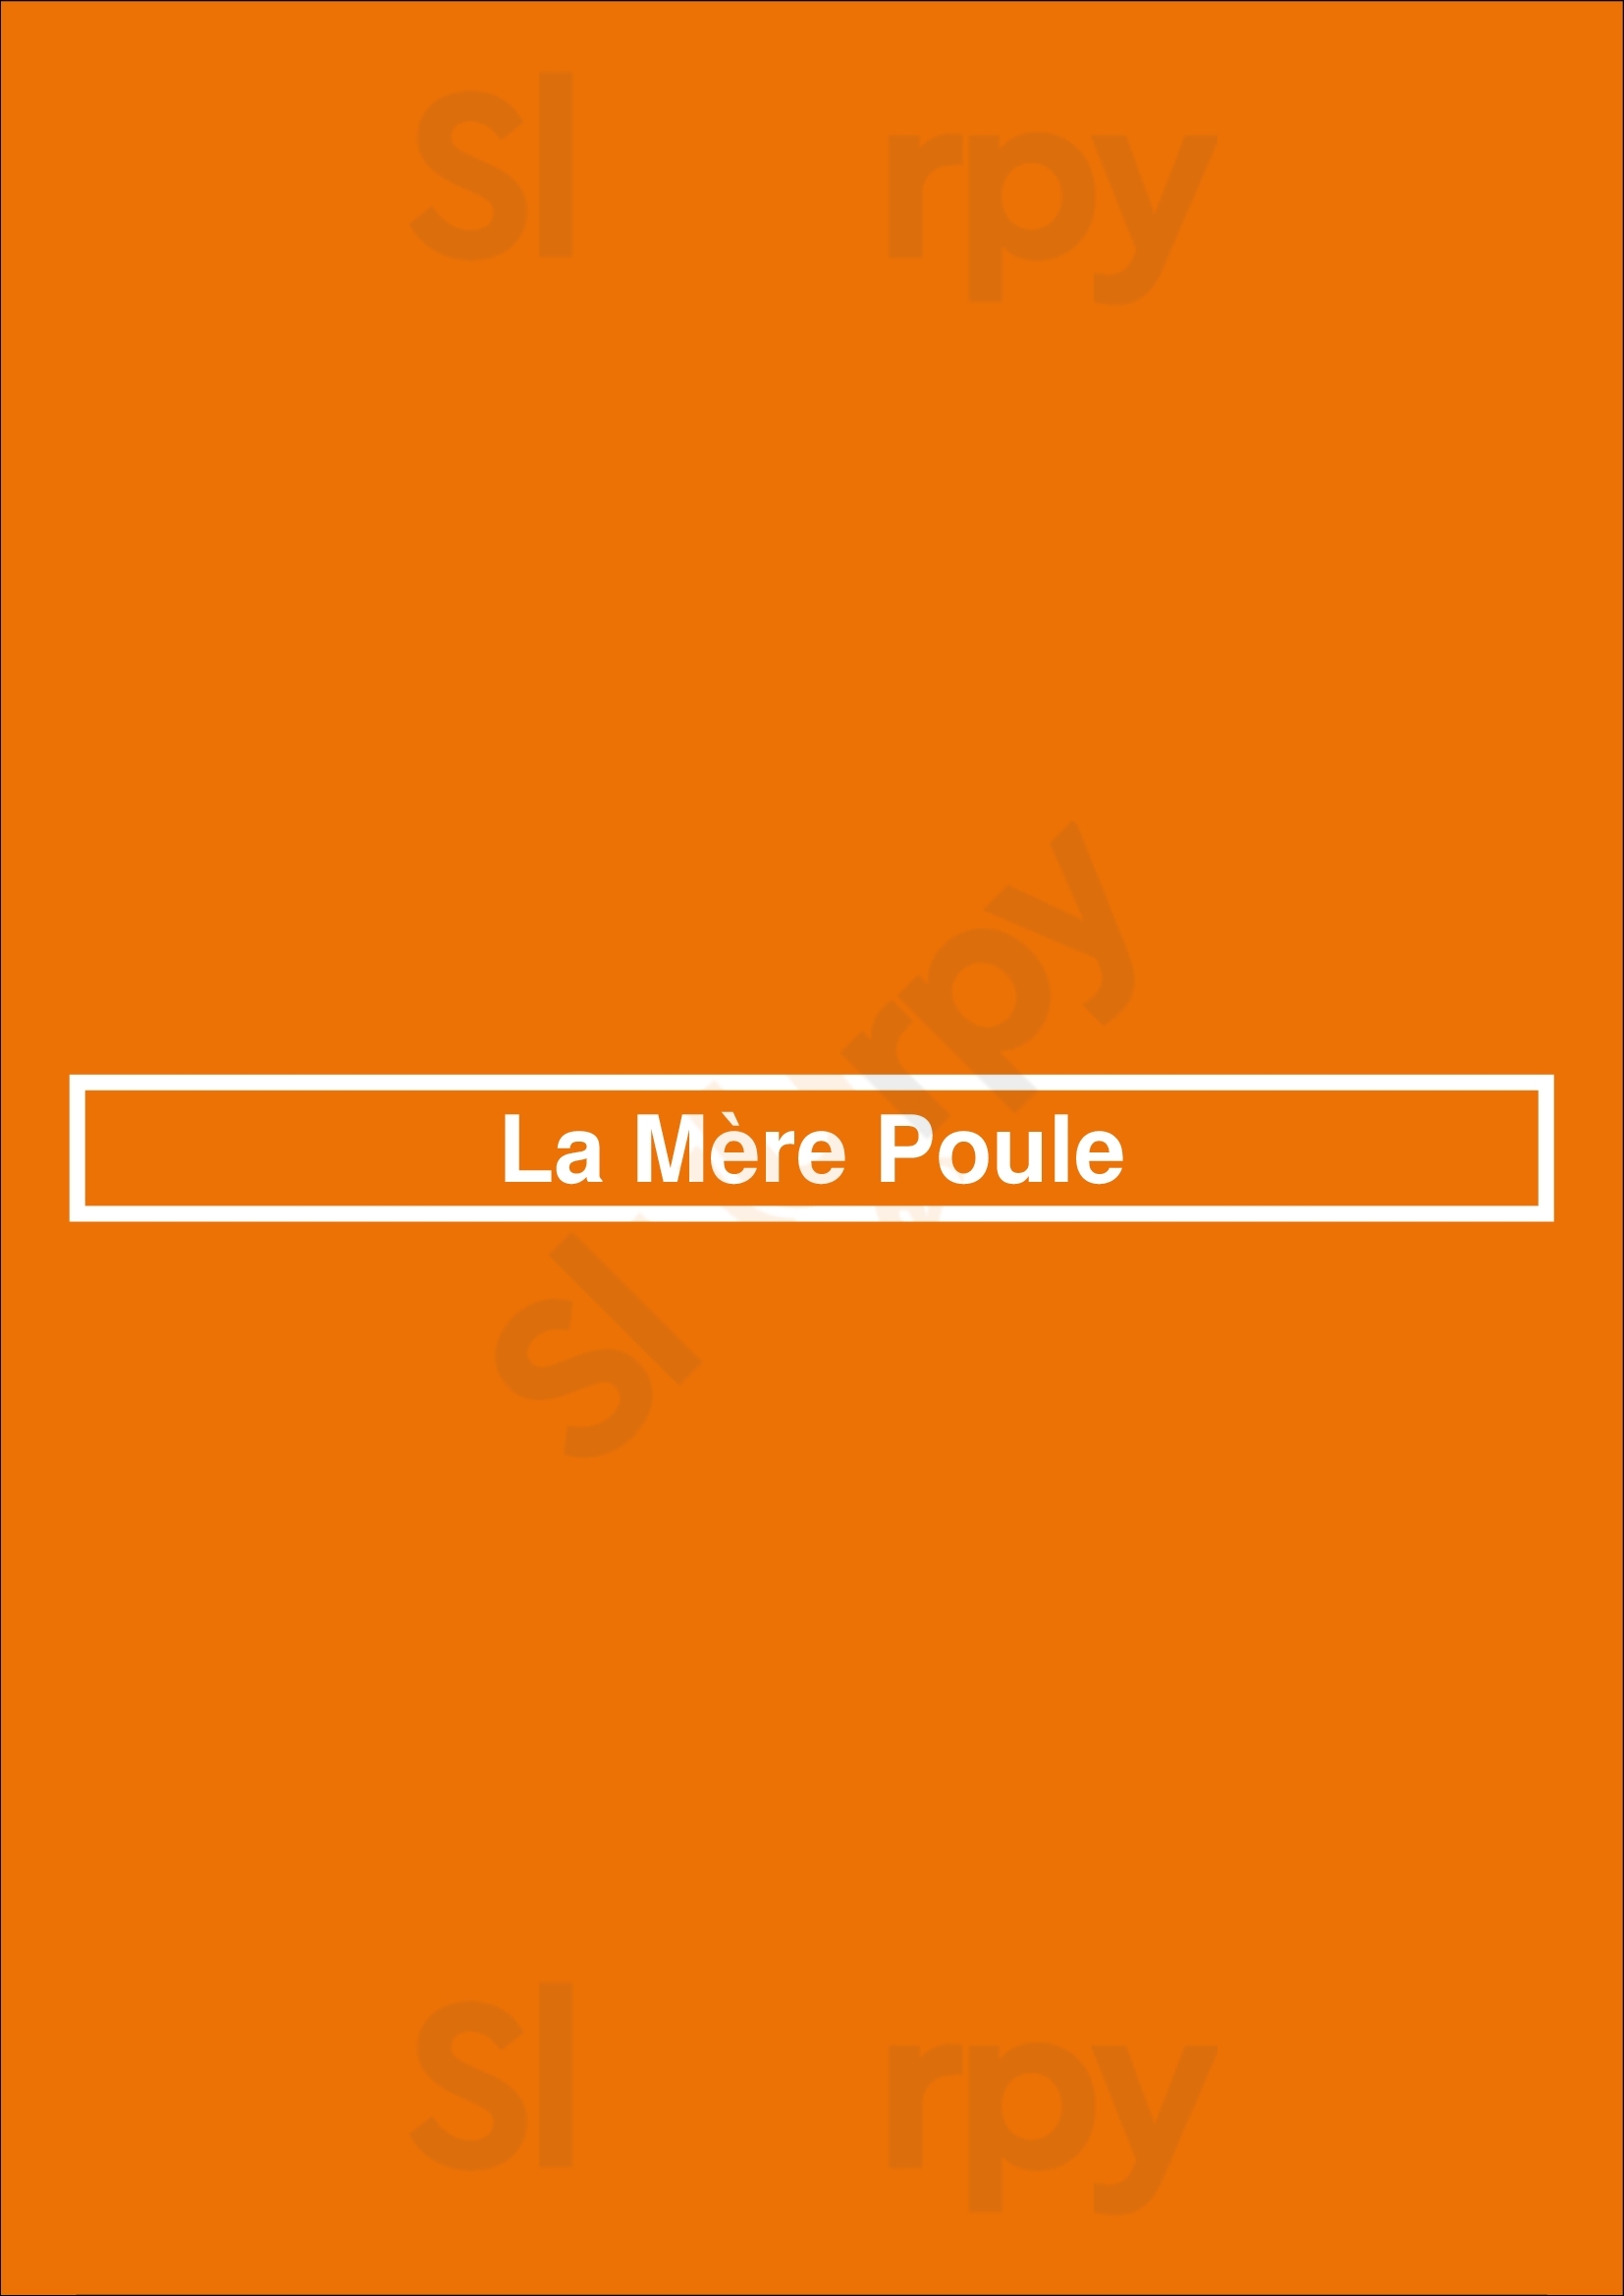 La Mère Poule Paris Menu - 1